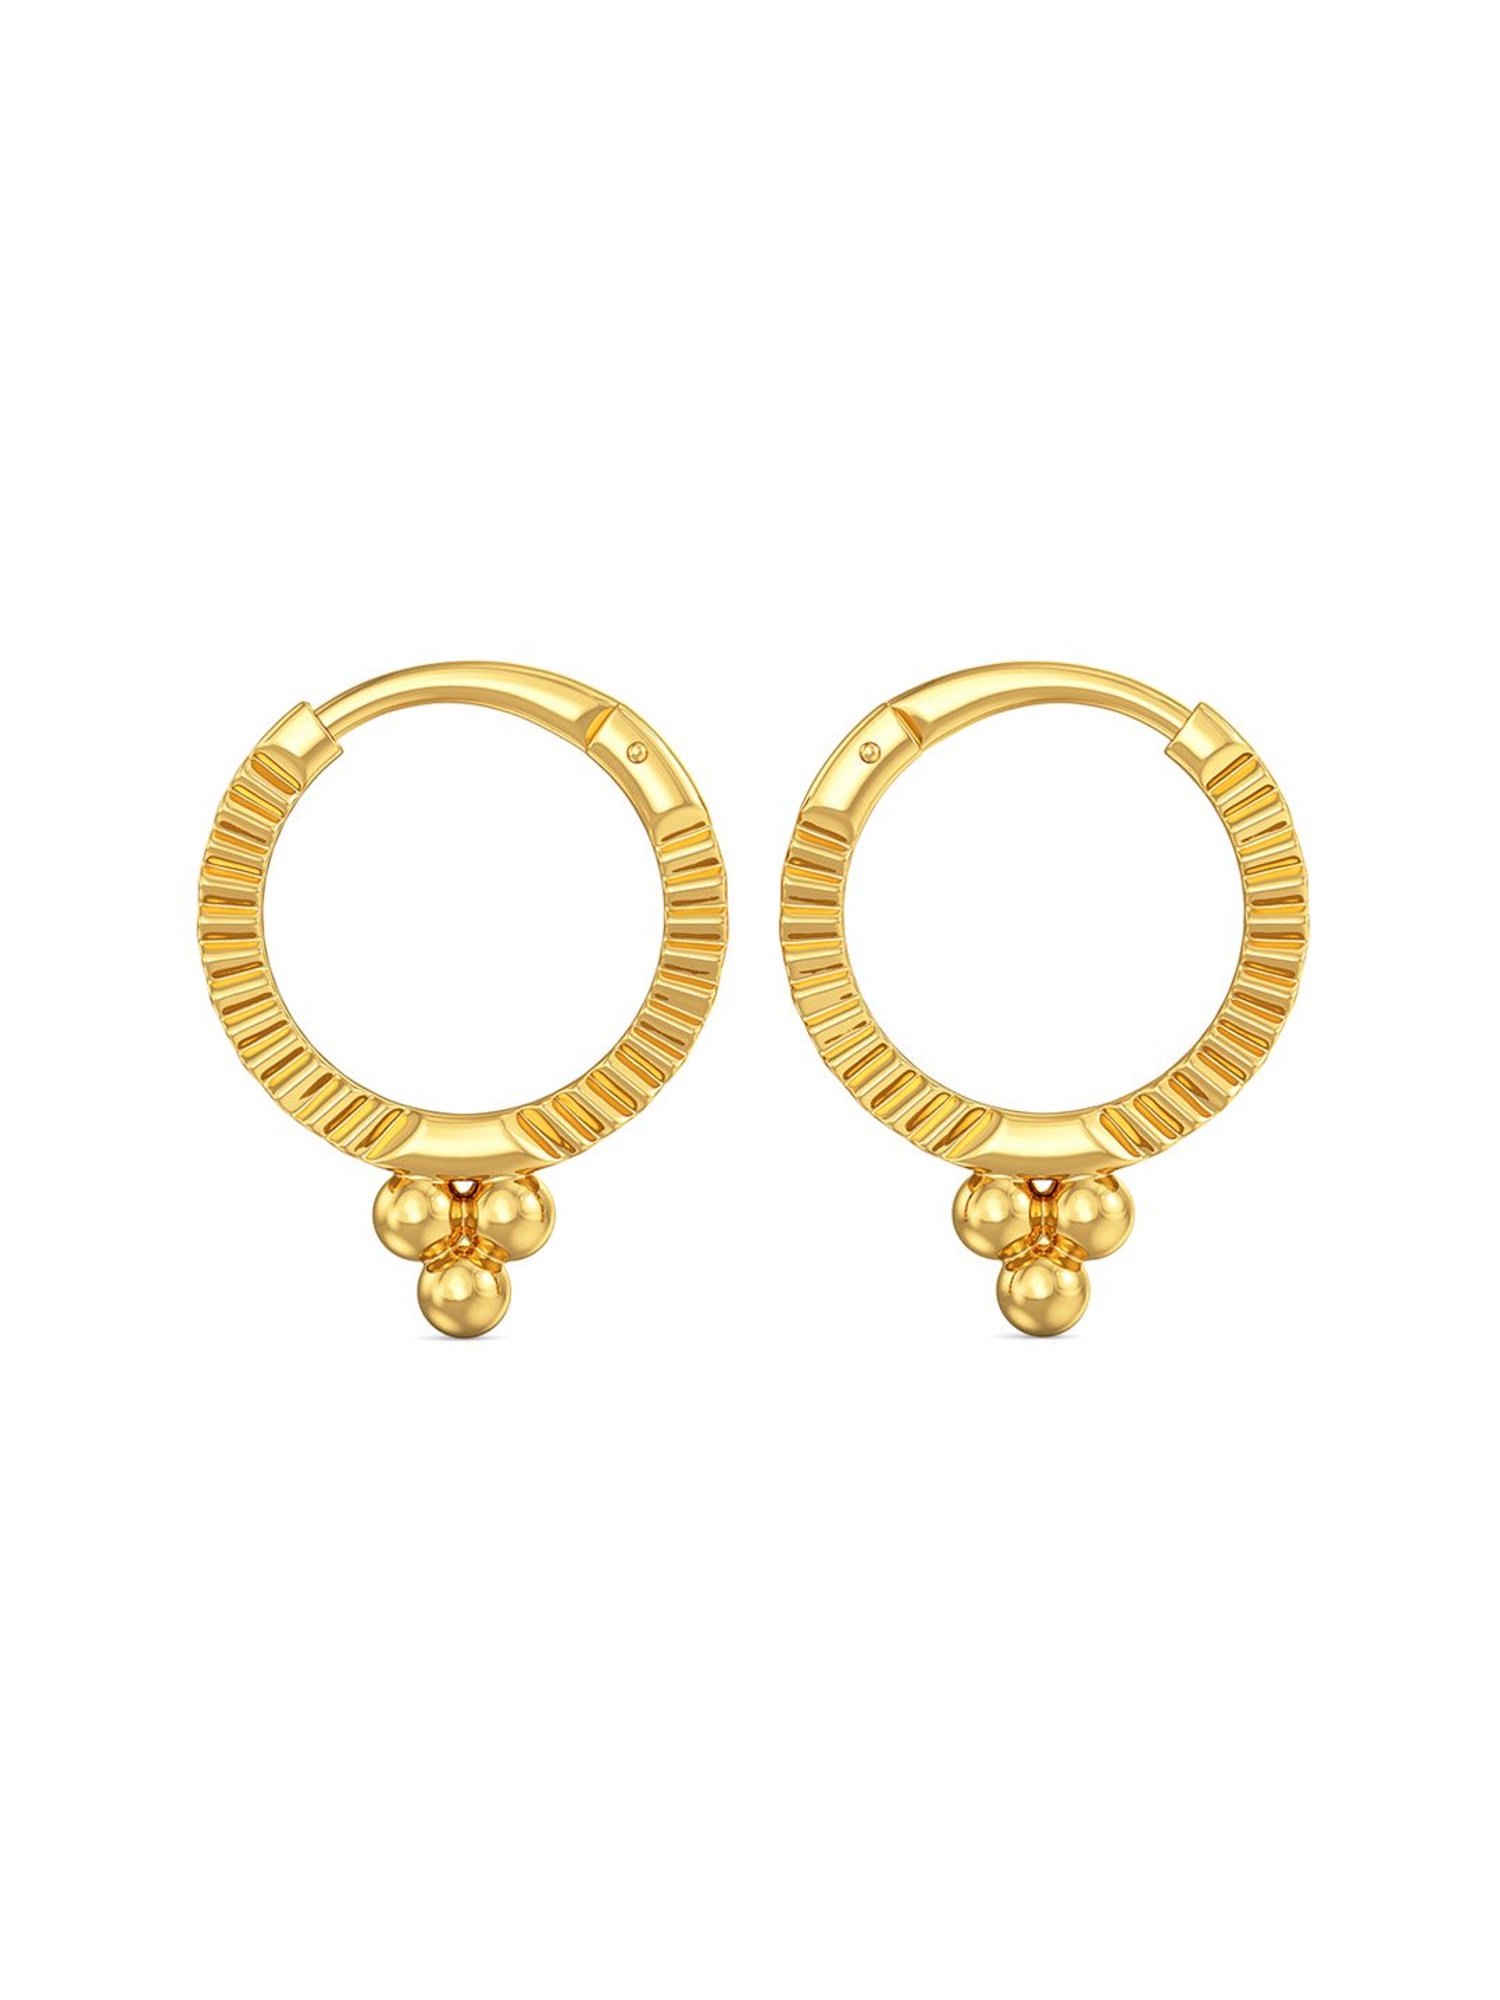 14K Gold Stars Post Earrings for Girls, Small Tiny Stud Earrings for Girls,  Solid Gold Earrings Toddlers Earrings, Gift for Xmas - Etsy